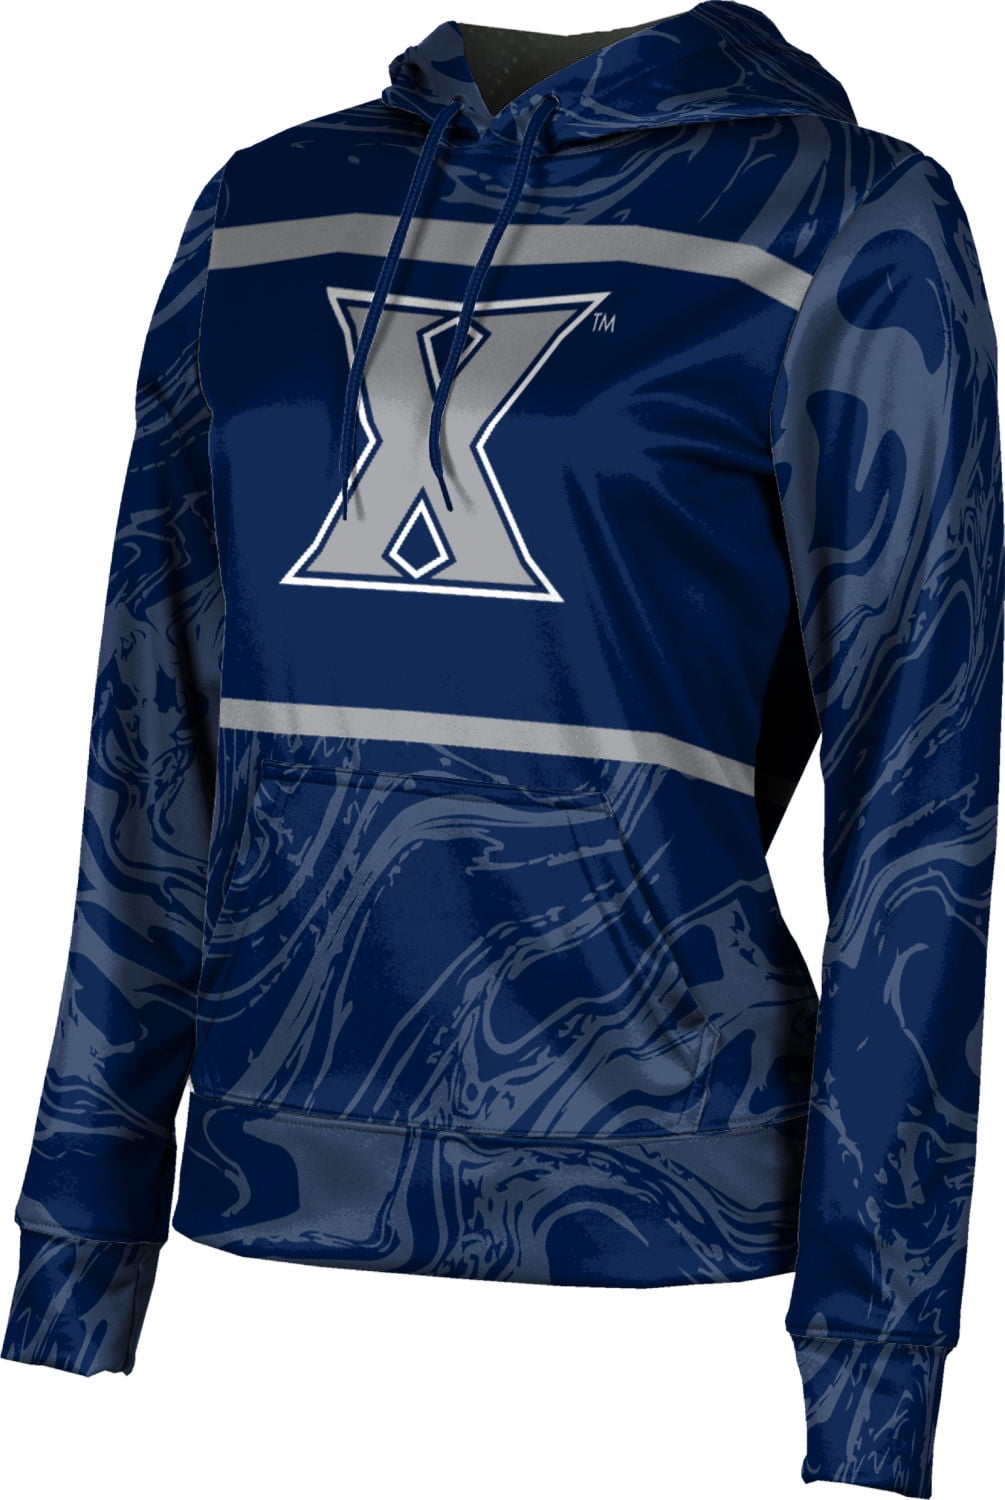 ProSphere Xavier University Boys Hoodie Sweatshirt Ripple 